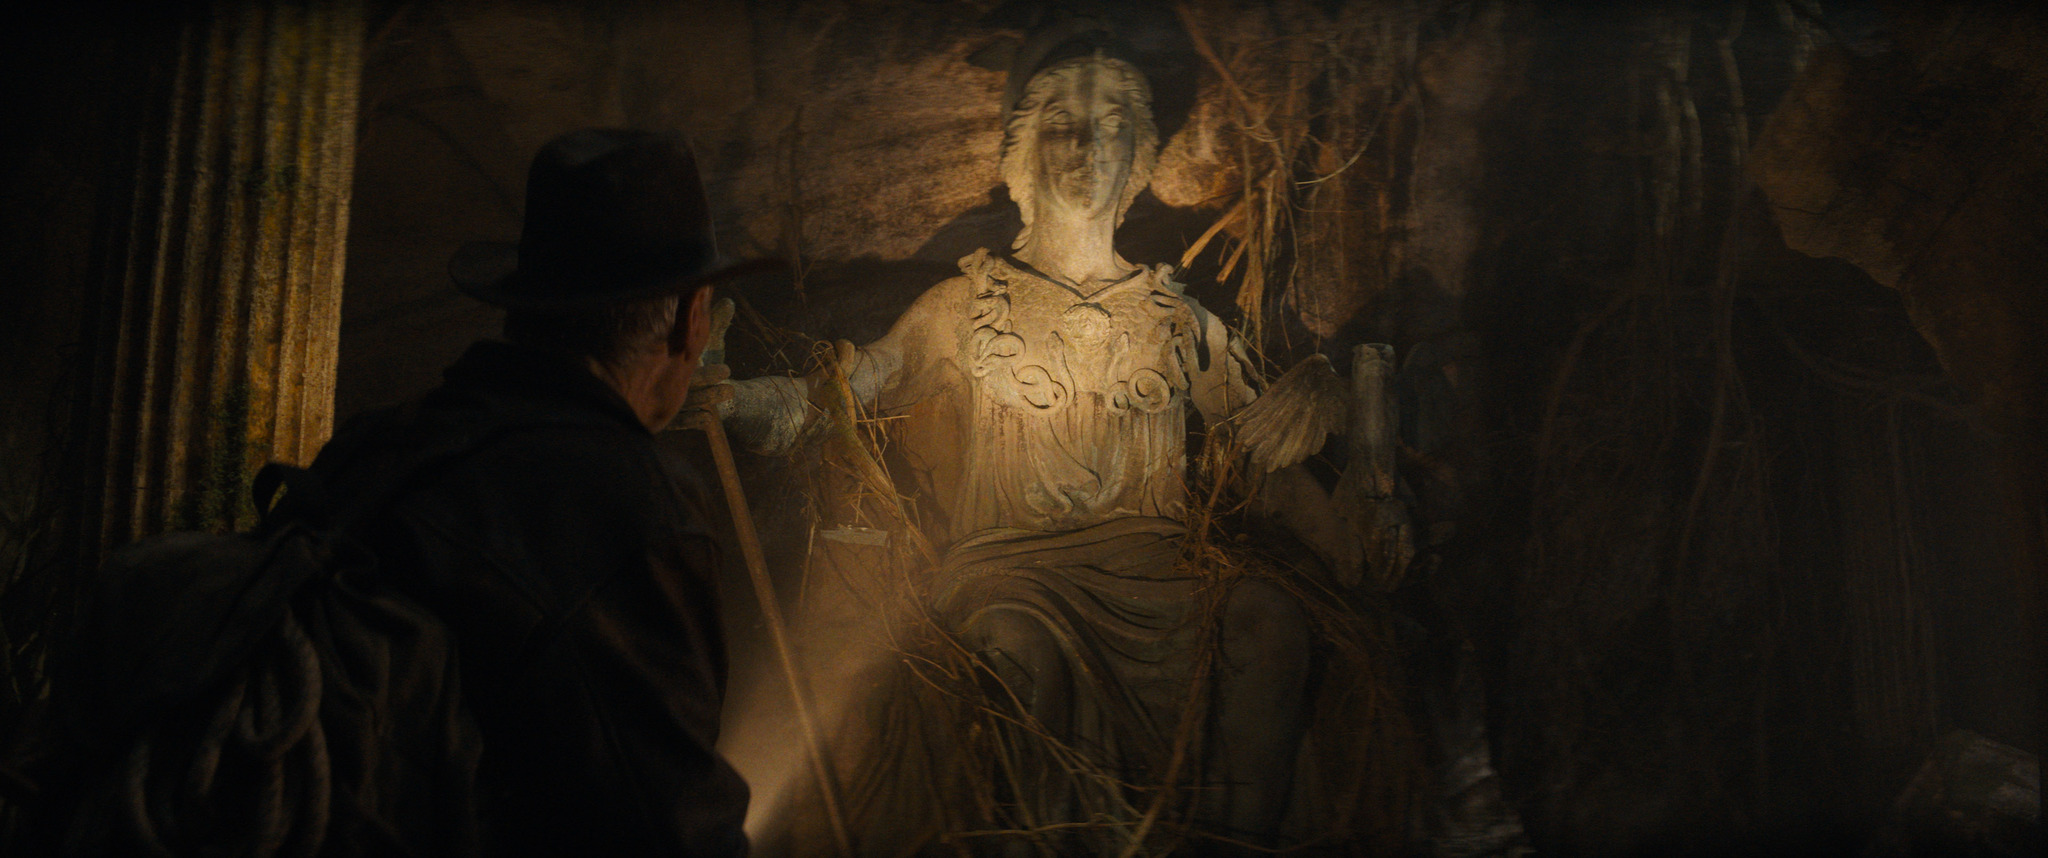 Indy prendra le temps d'explorer une tombe oubliée ou deux dans ce nouveau film!